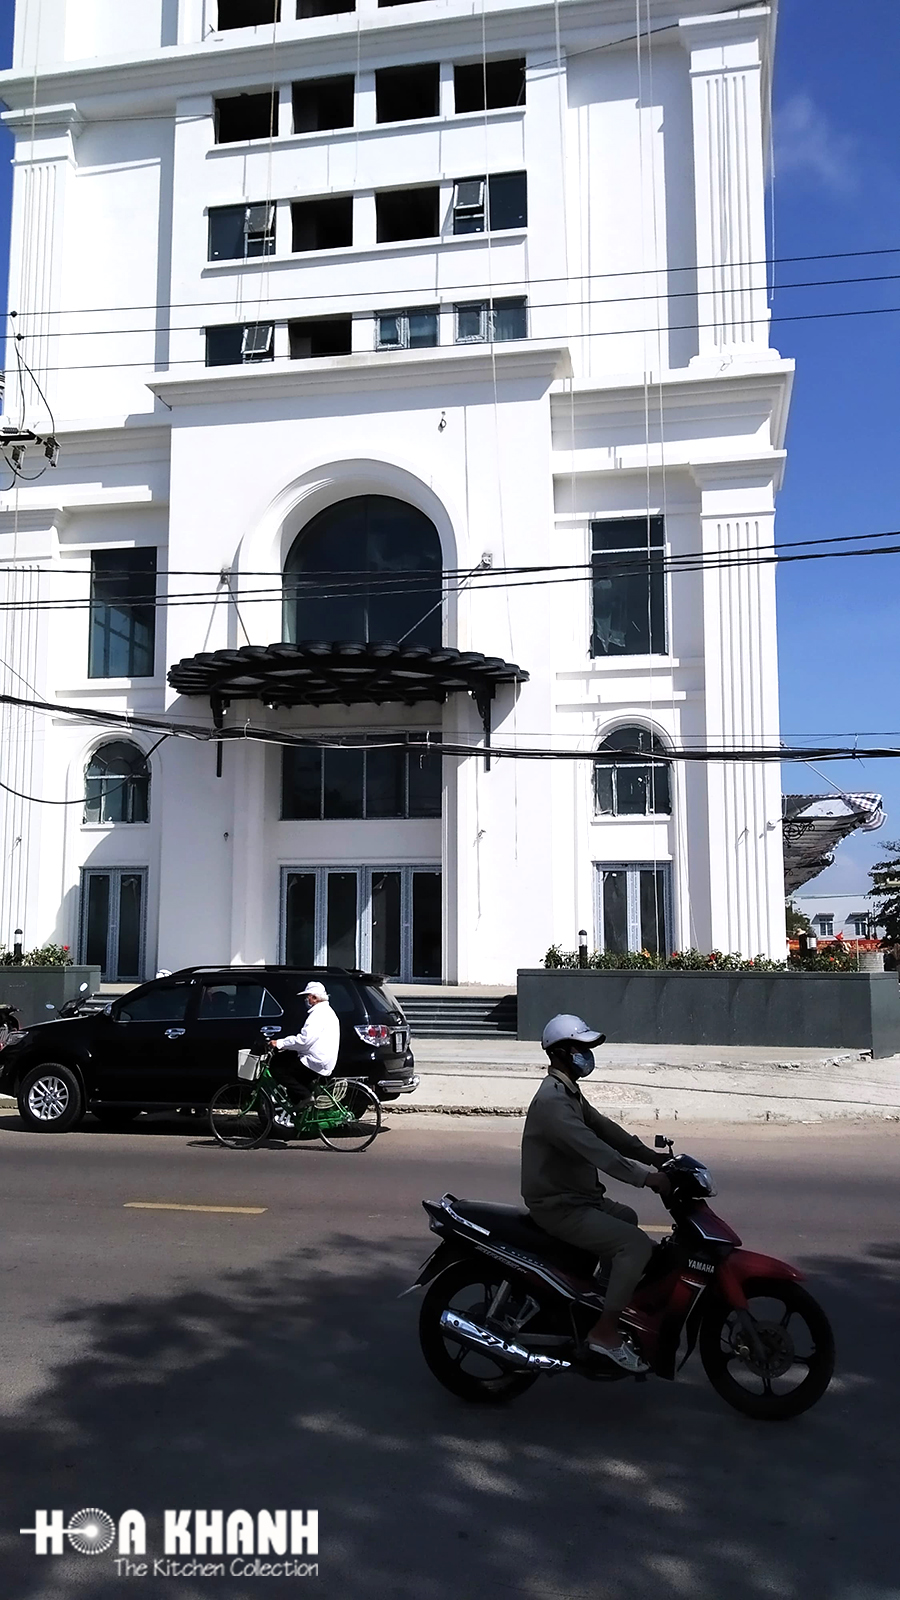 Công trình dự án Tòa nhà hỗn hợp thương mại và căn hộ Quy Nhơn tại 76 Trần Hưng Đạo, Tp. Quy Nhơn.